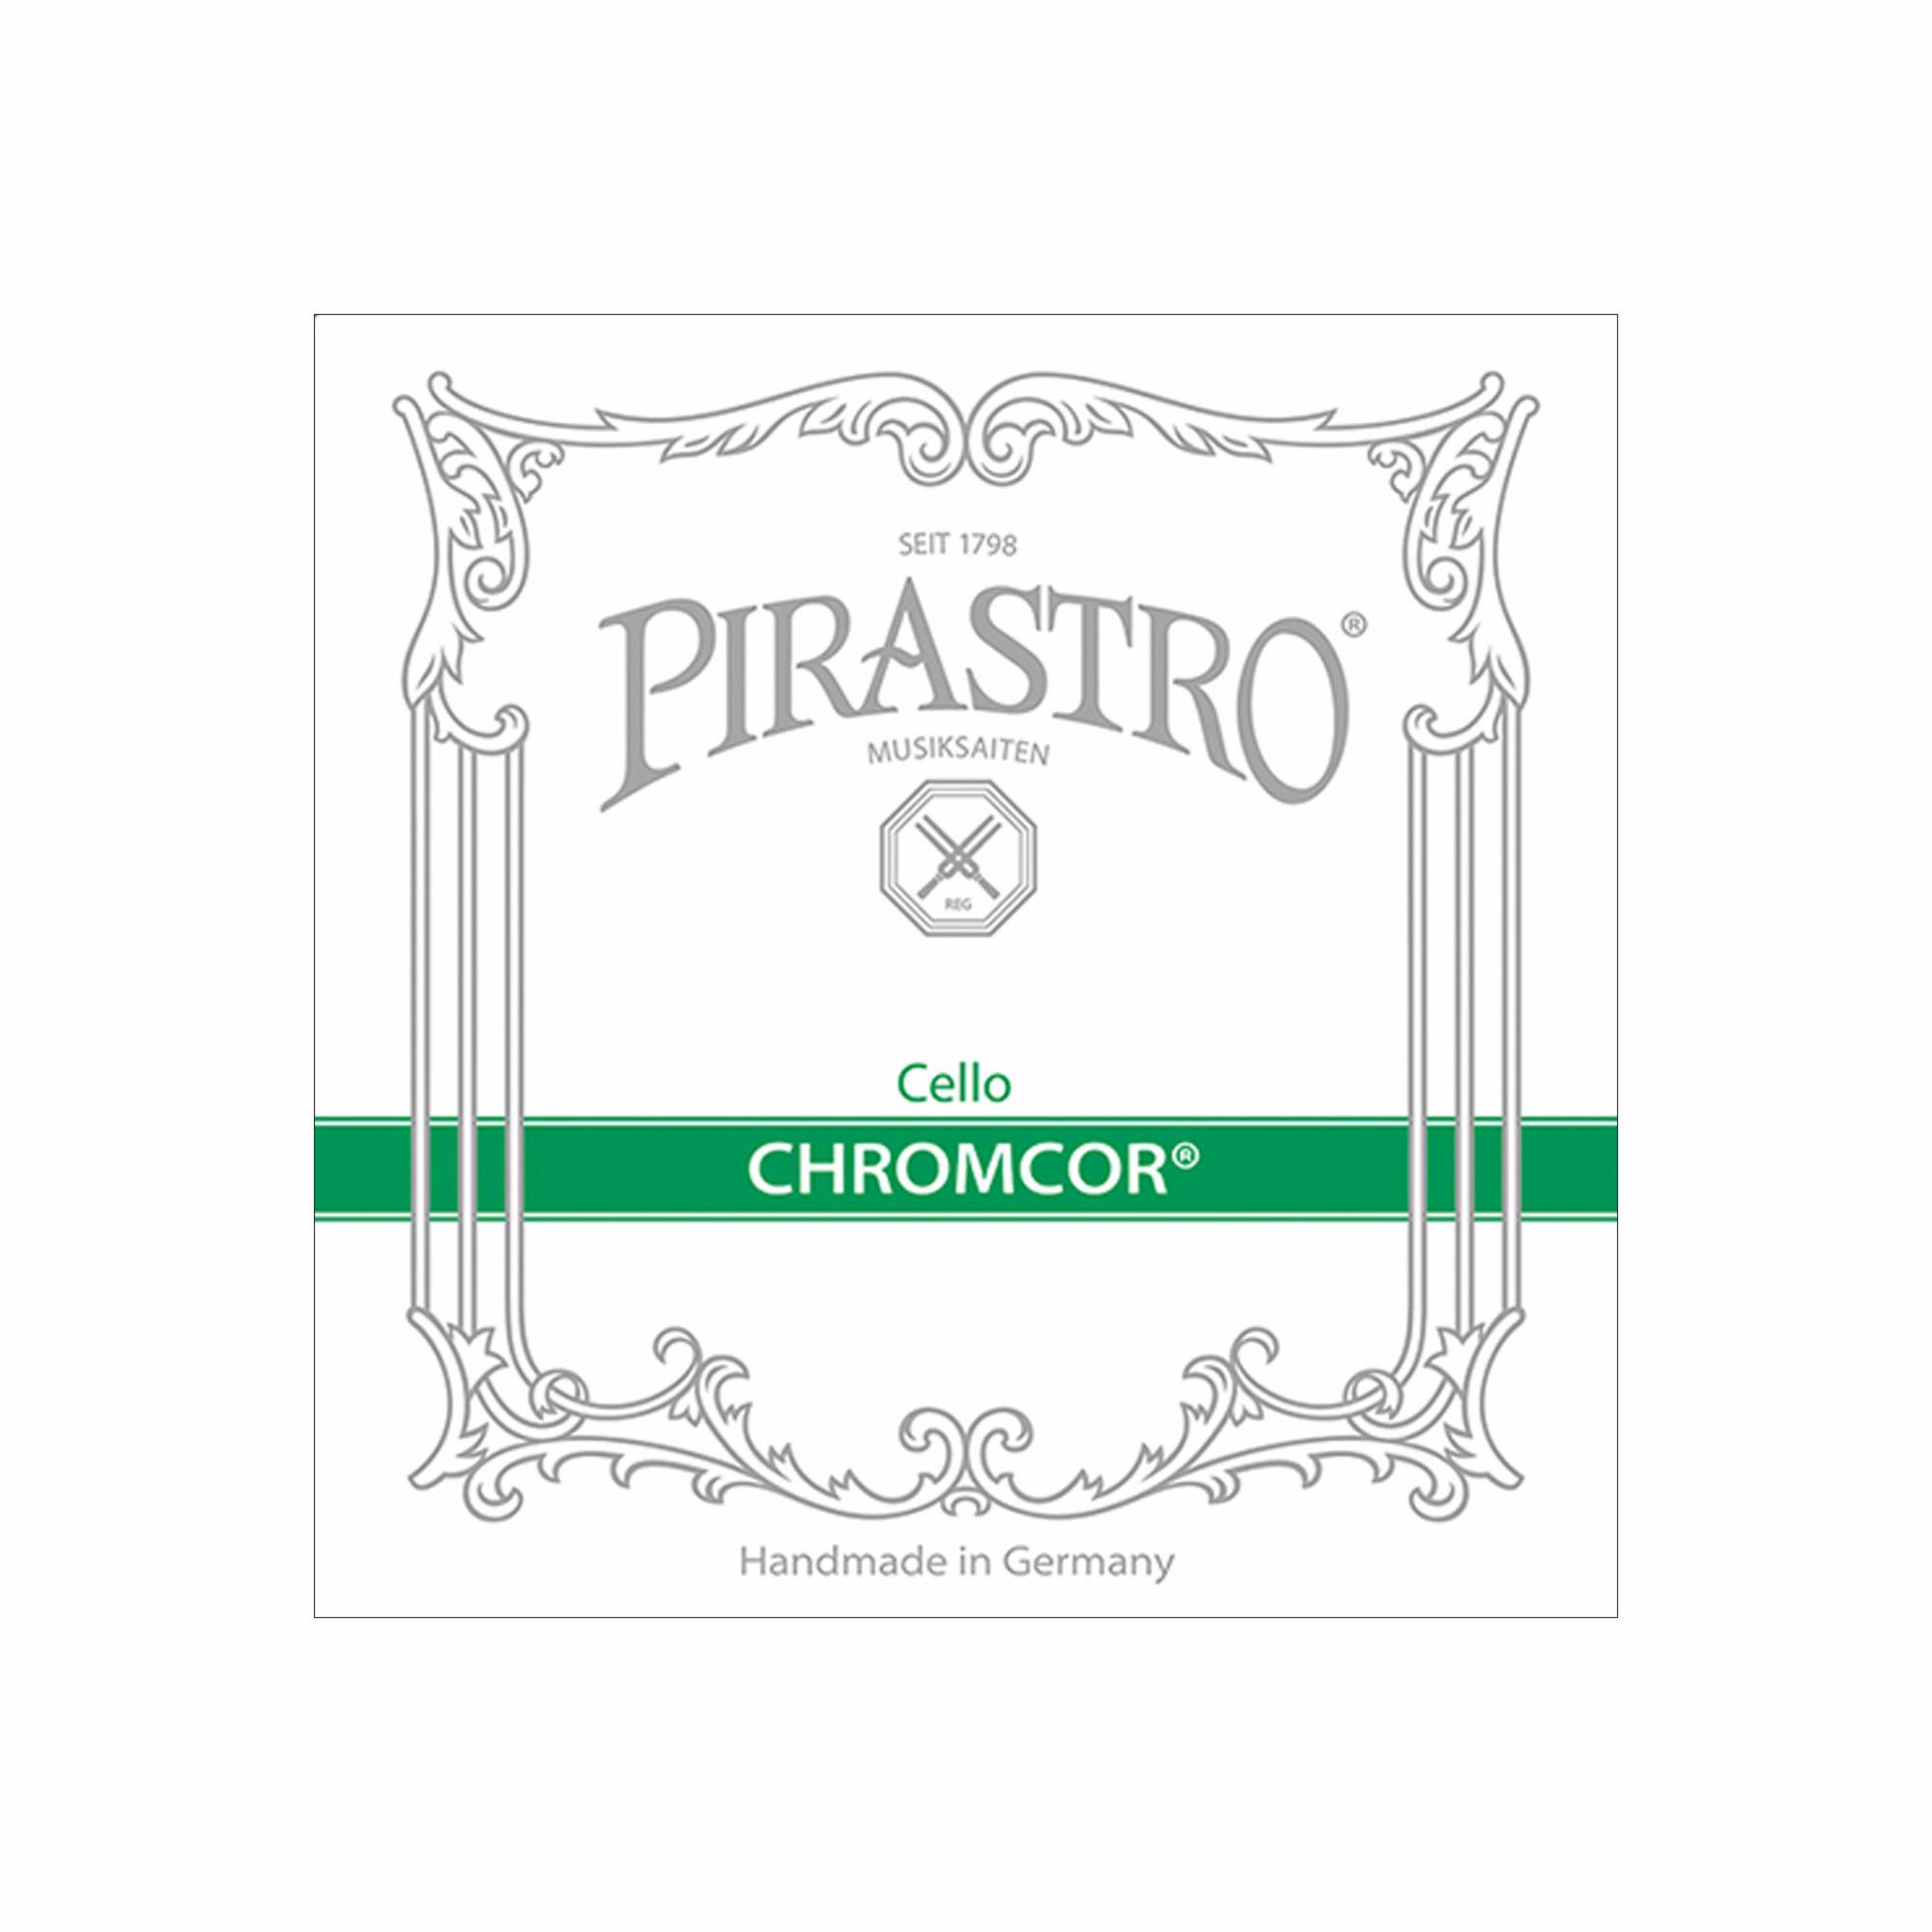 Pirastro Chromcor Cello Strings | Southwest Strings